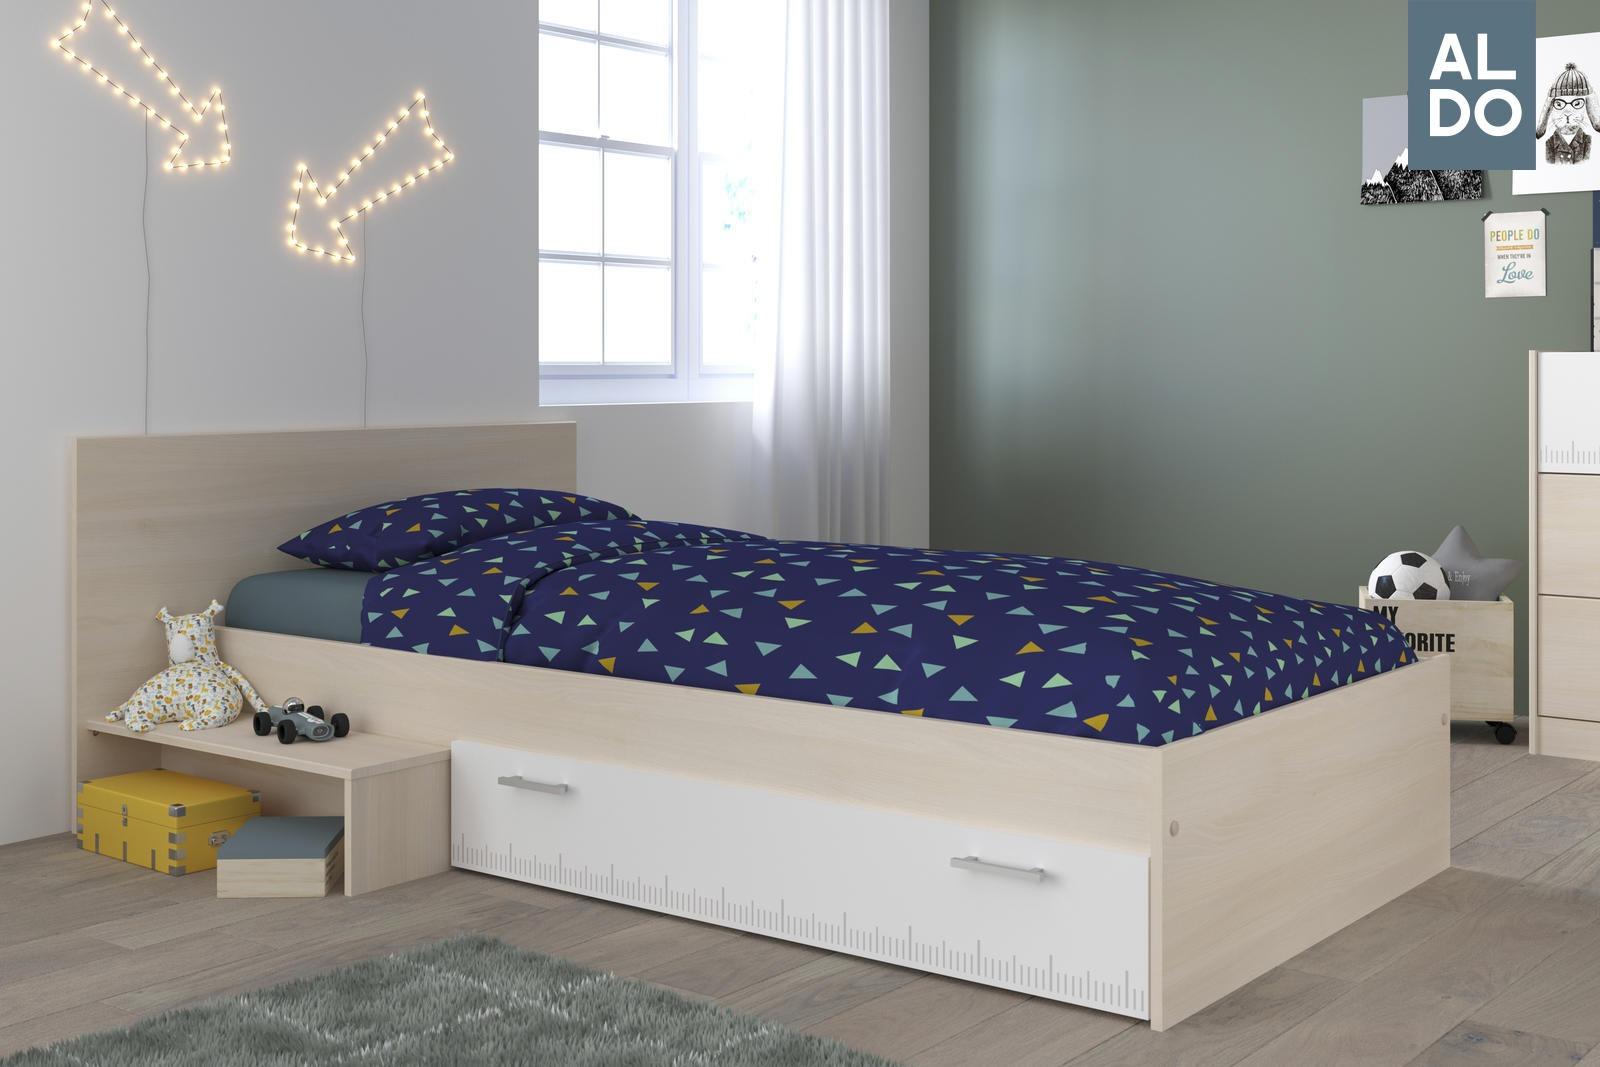 Dětská postel Charley (výroba Francie) bílá-akácie - 90x200 cm - Studentské pokoje